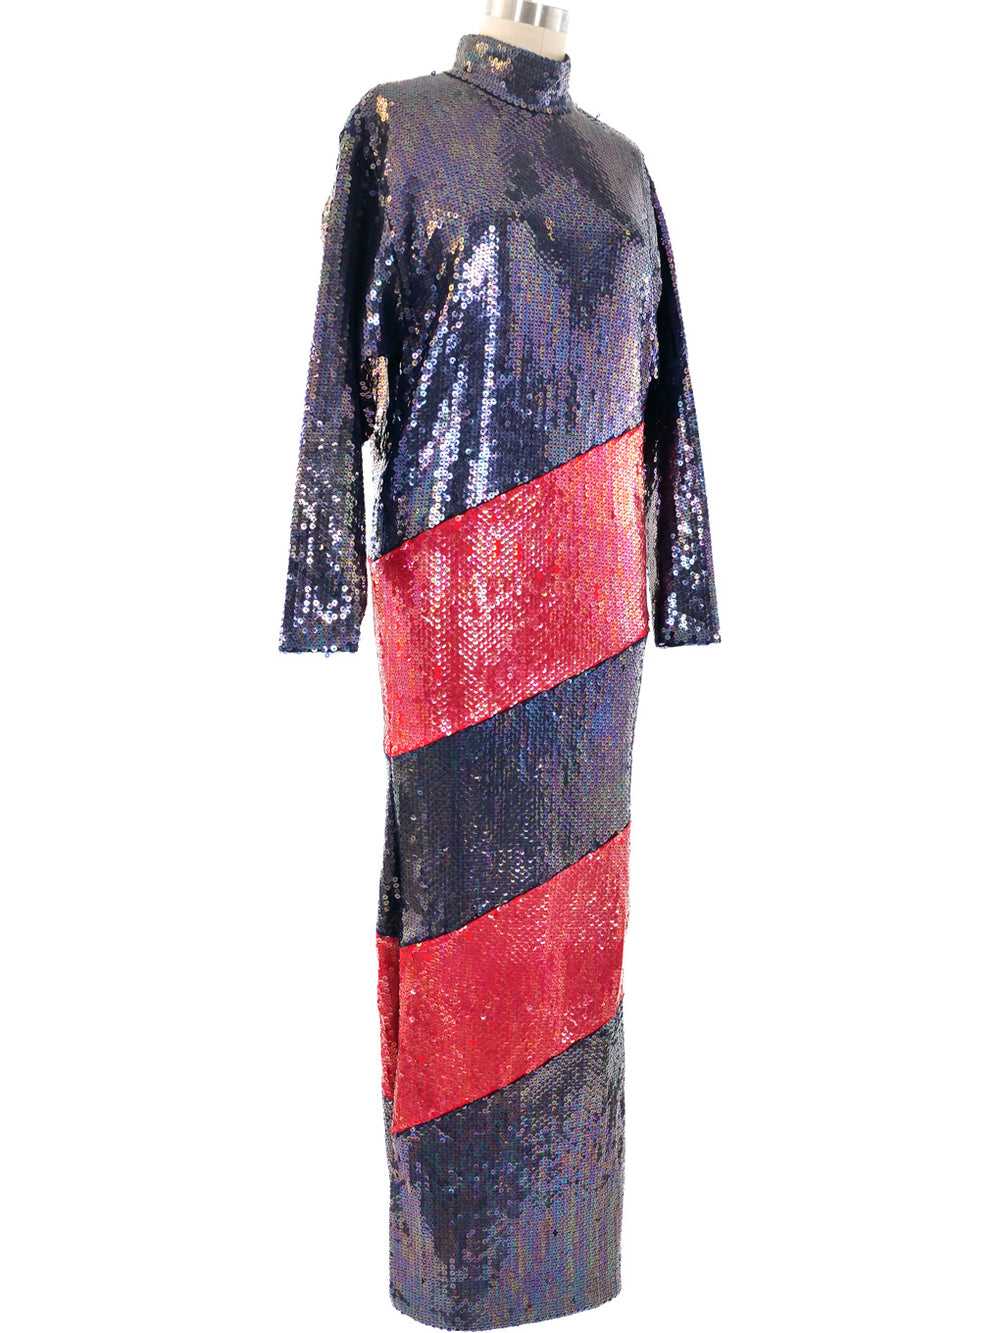 Bill Blass Sequined Column Gown - image 3